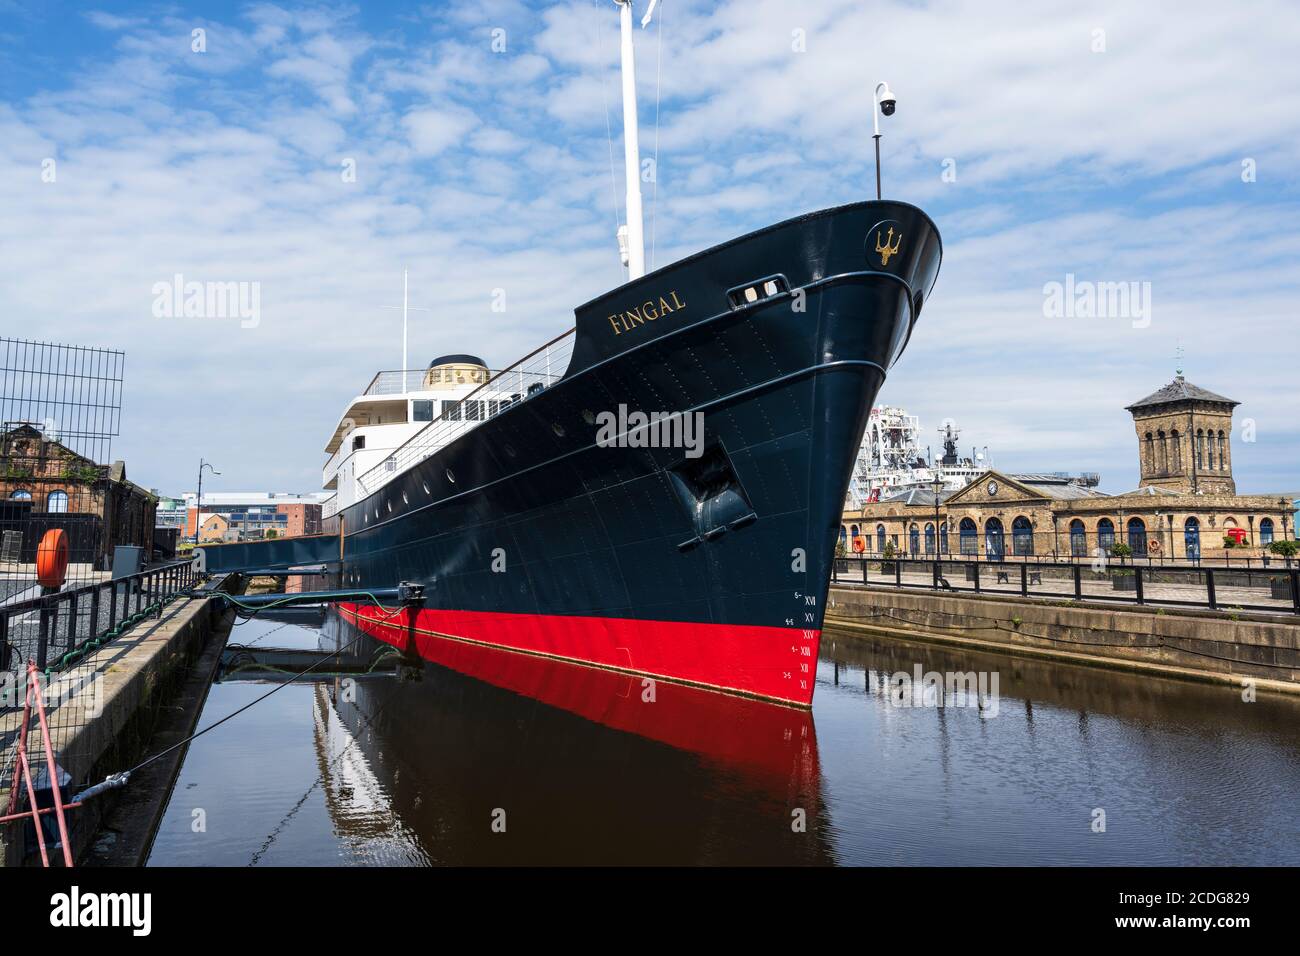 MV Fingal hotel galleggiante di lusso permanentemente ormeggiato in Albert Dock nel Porto di Leith, Edimburgo, Scozia, Regno Unito Foto Stock